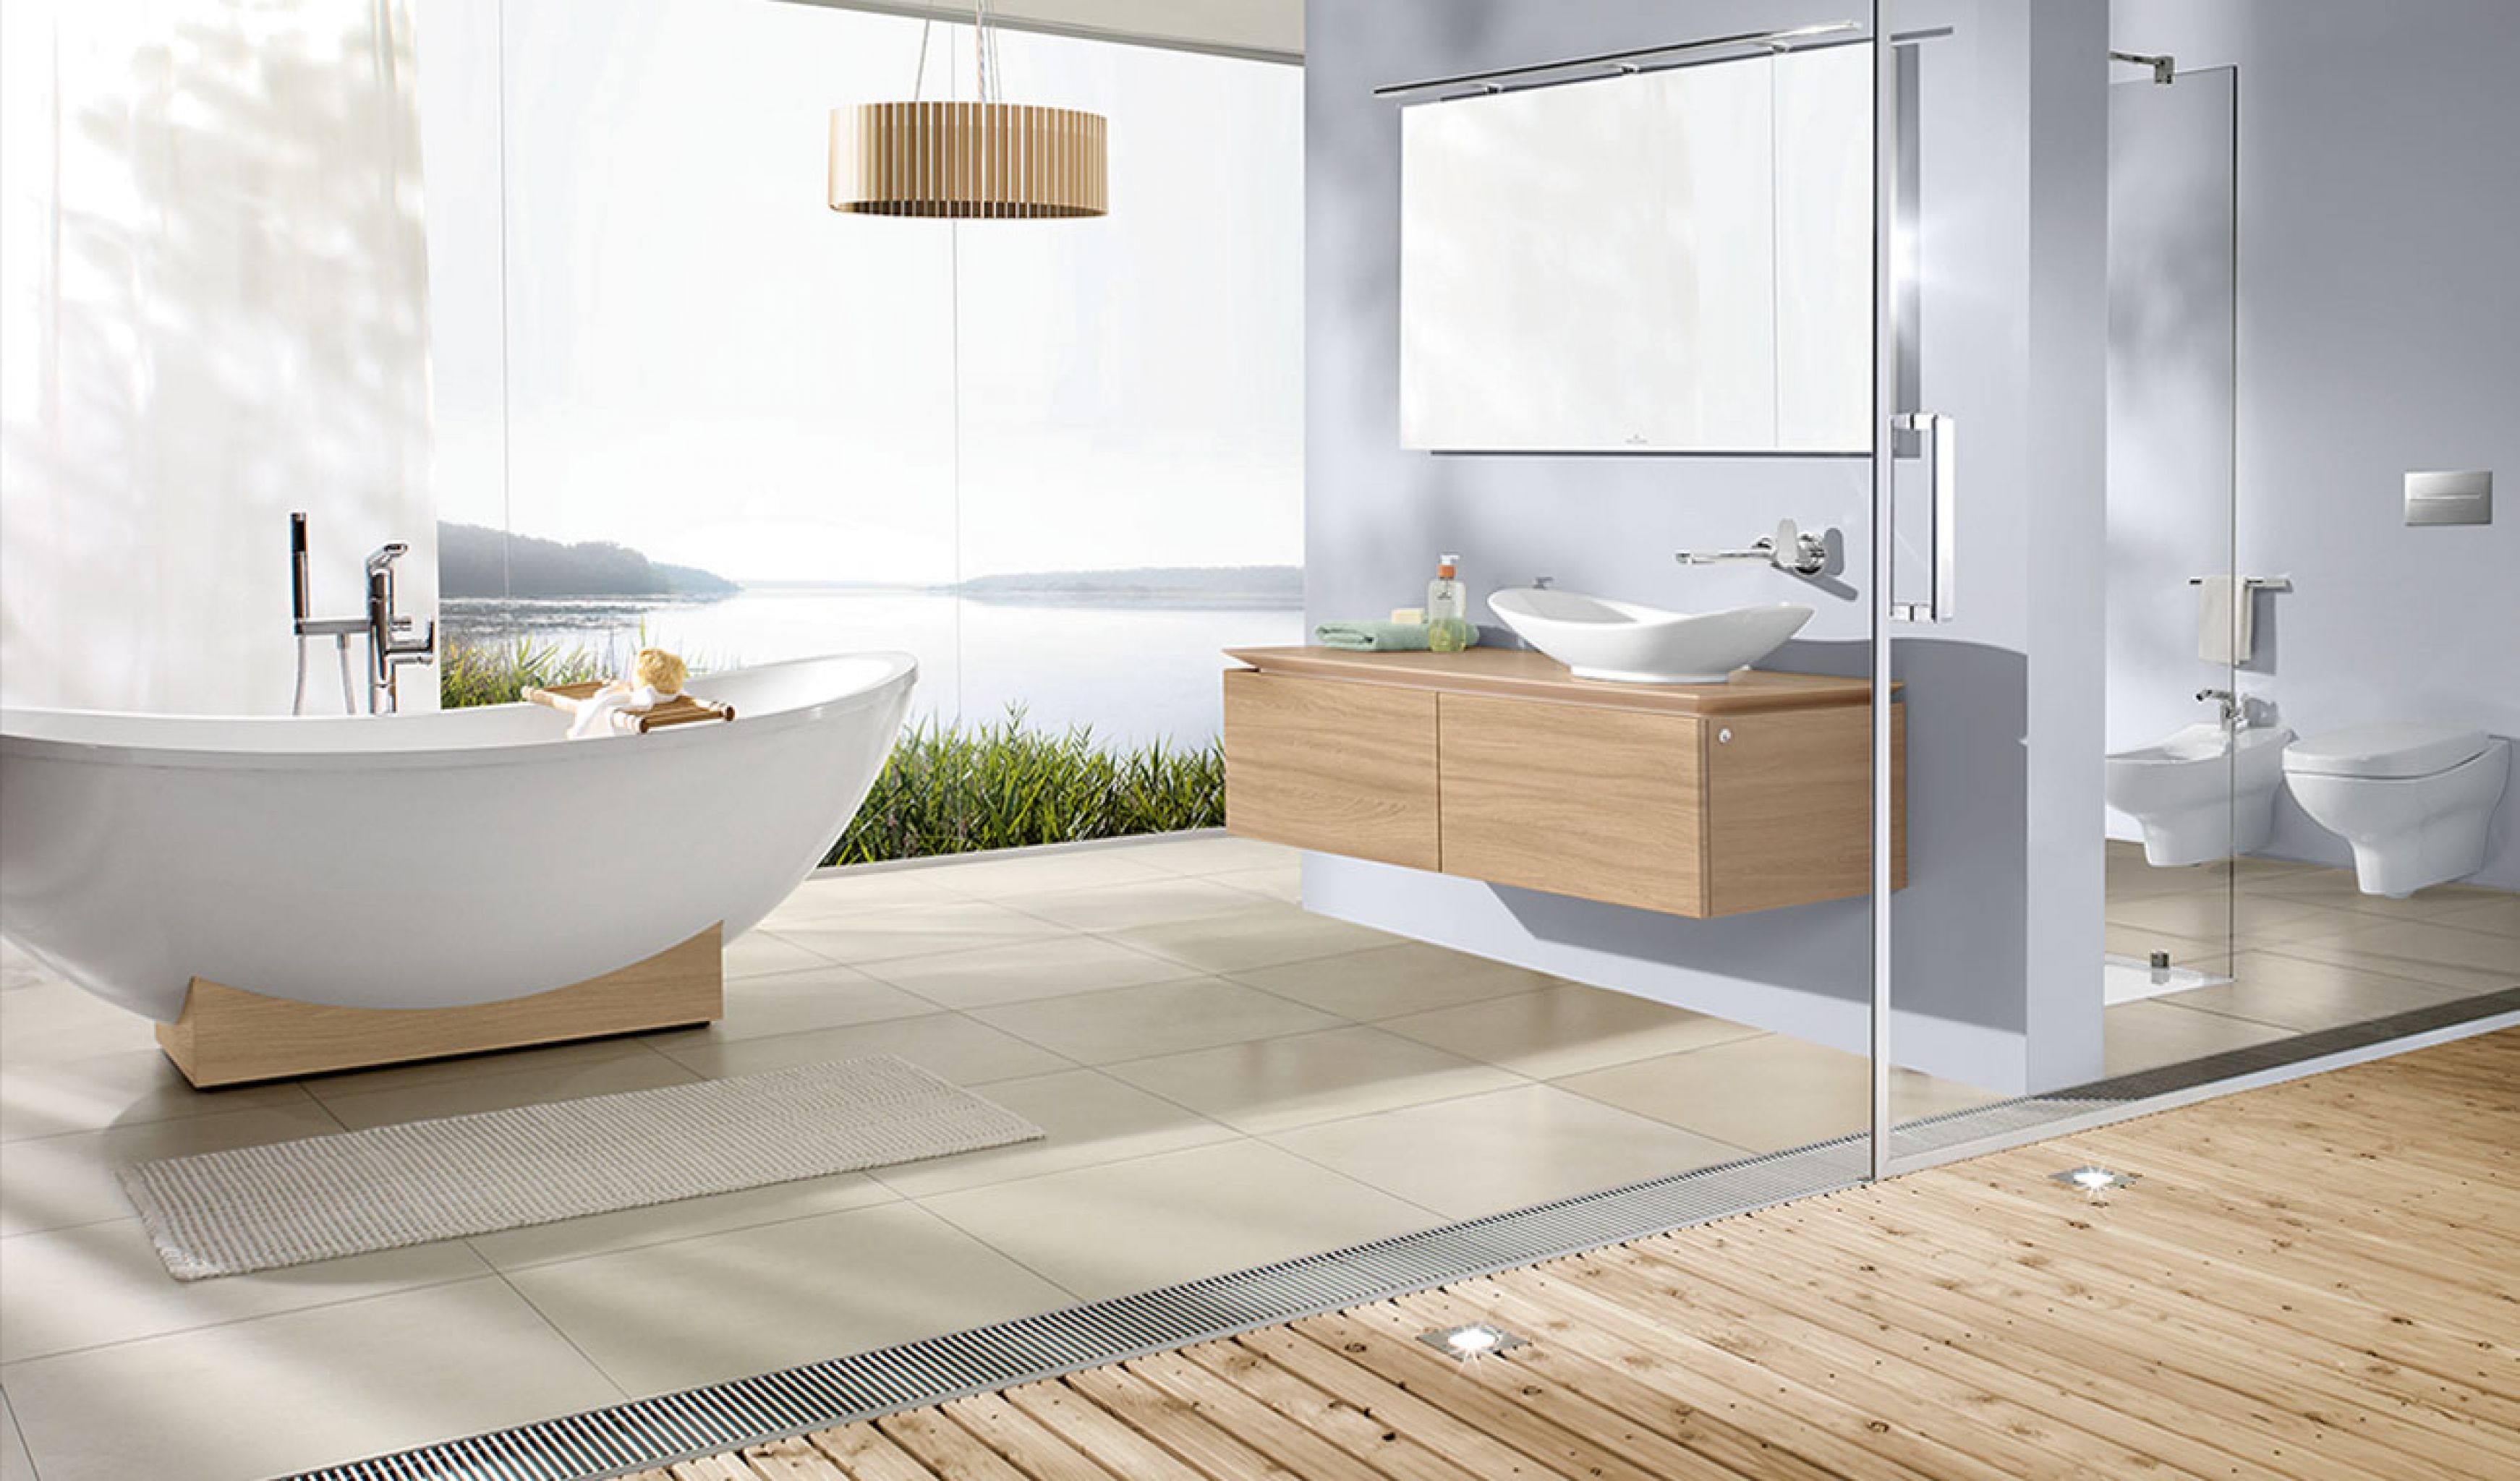 precioso baño decorado en blanco con suelo de parquet y baldosas en beige, bañera exenta de diseño 